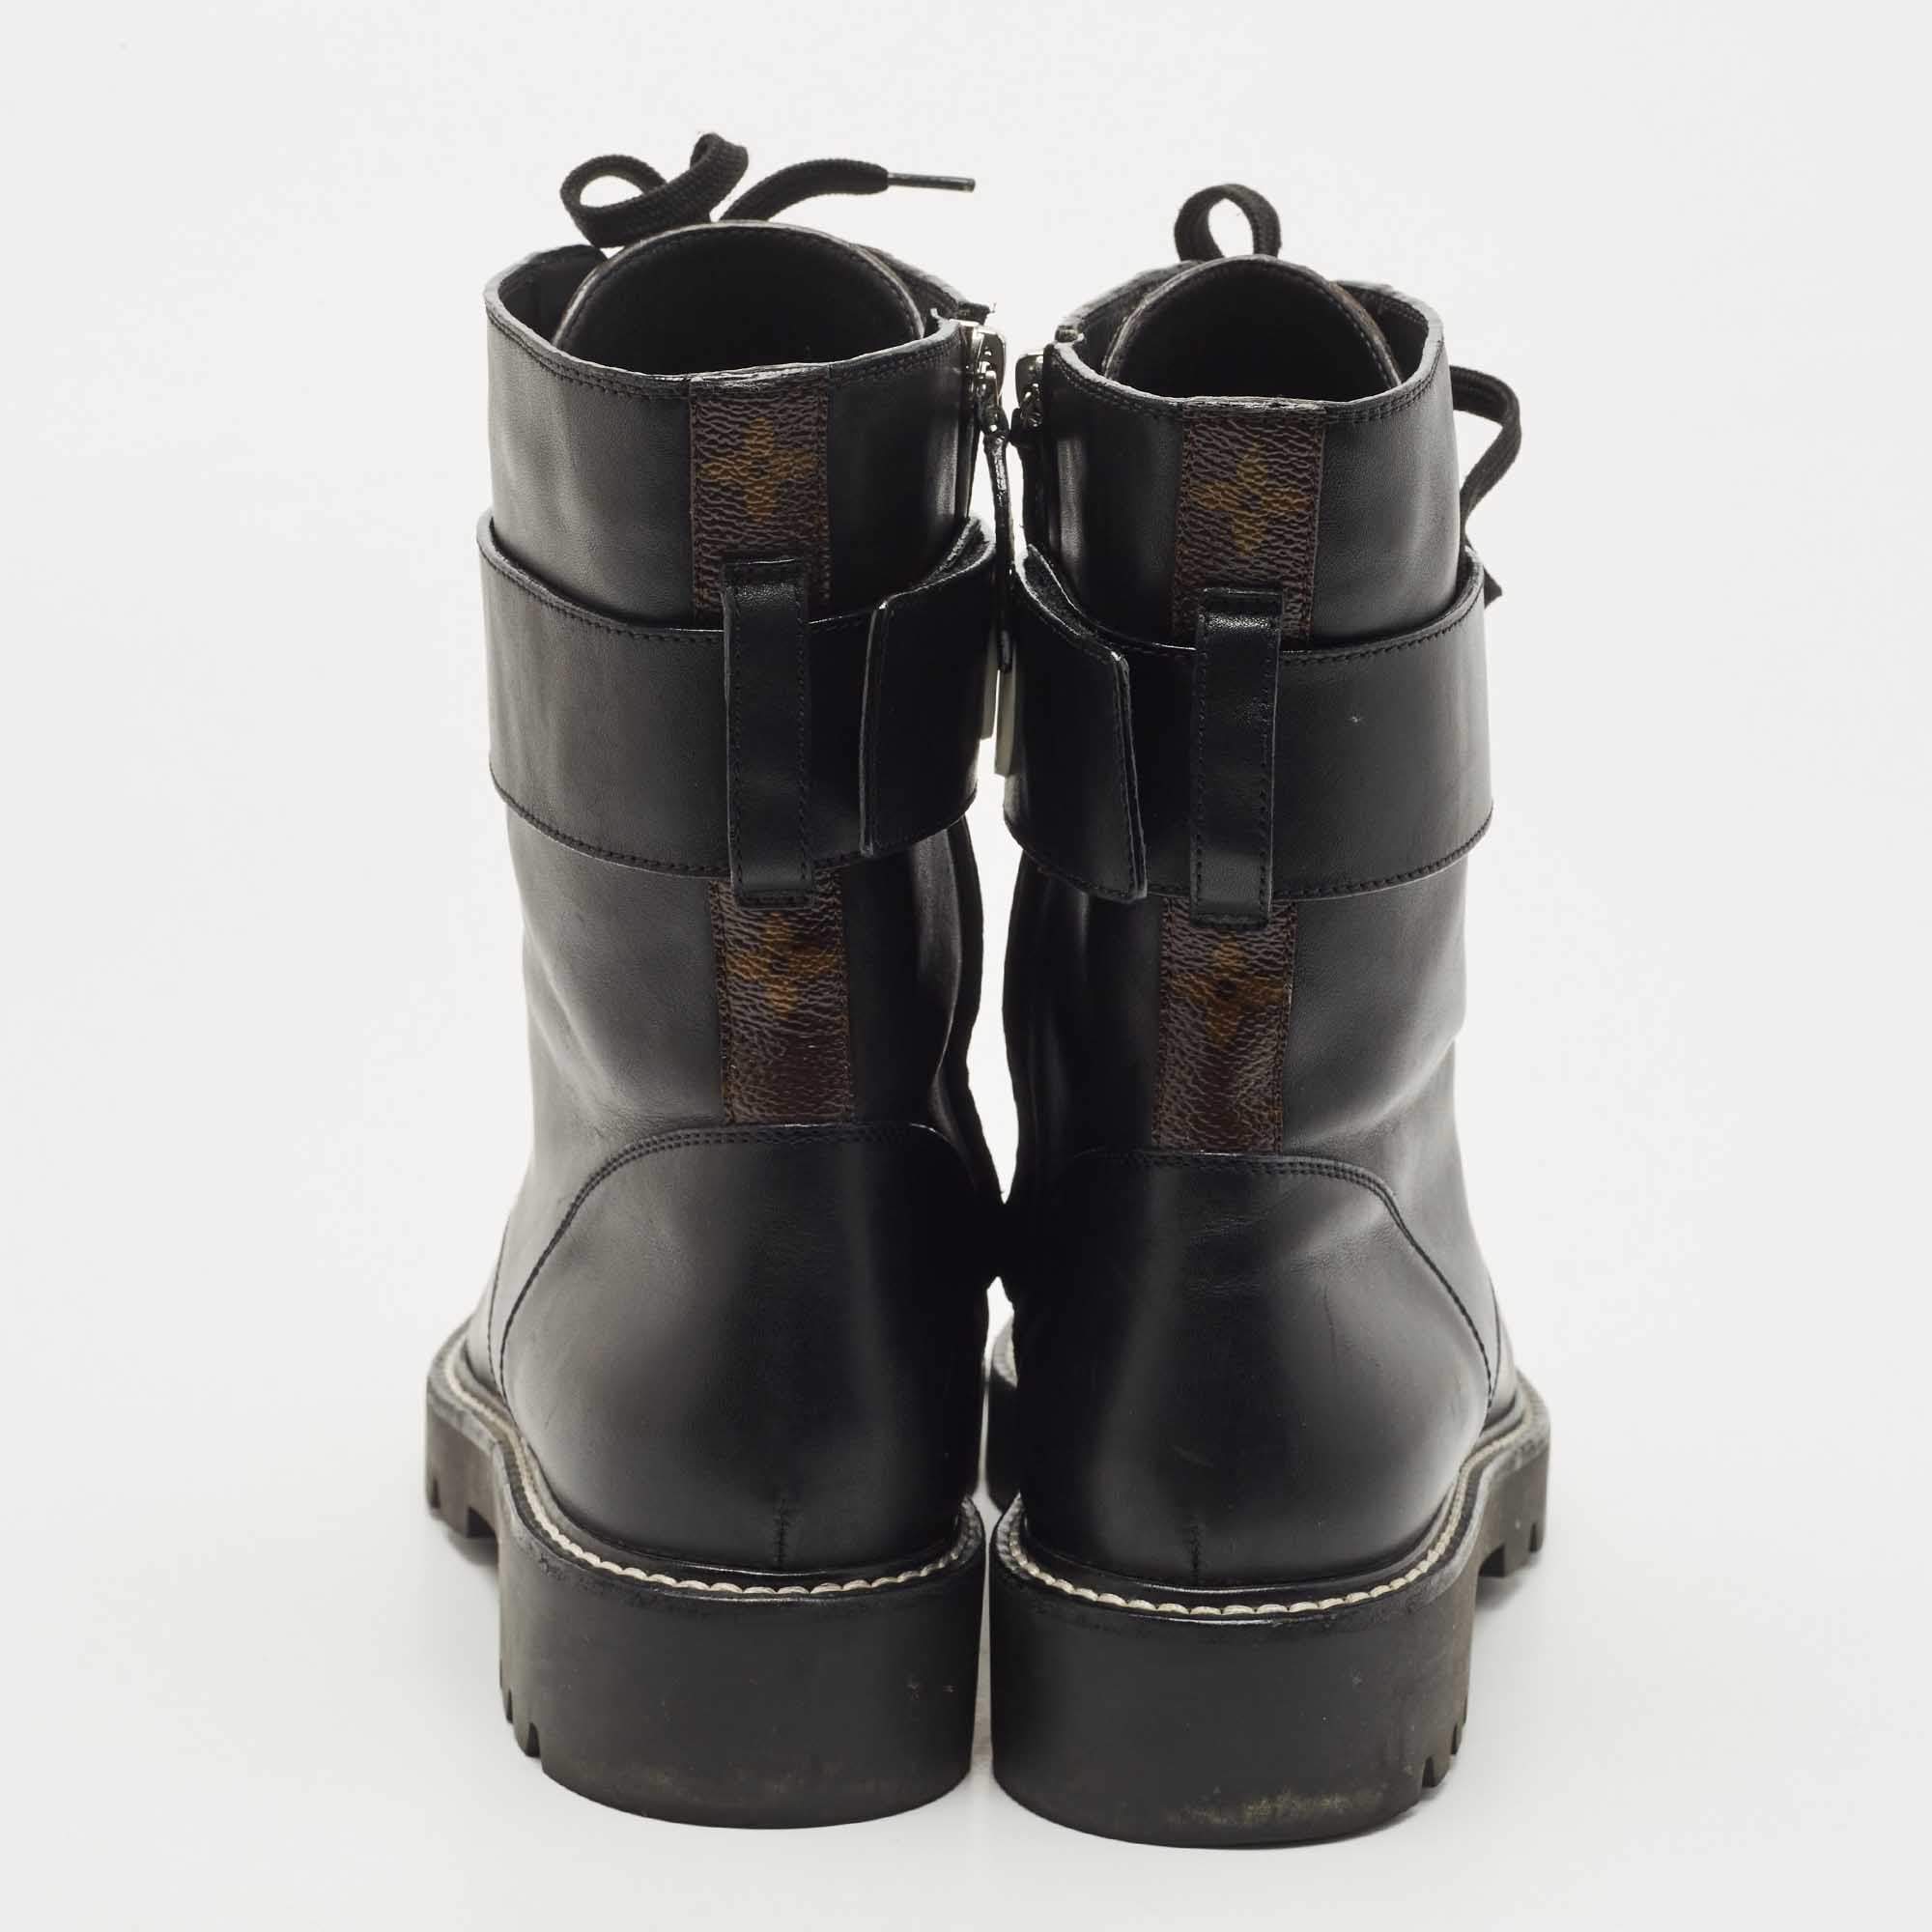 Louis Vuitton Leather Combat Boots - Black Boots, Shoes - LOU802542